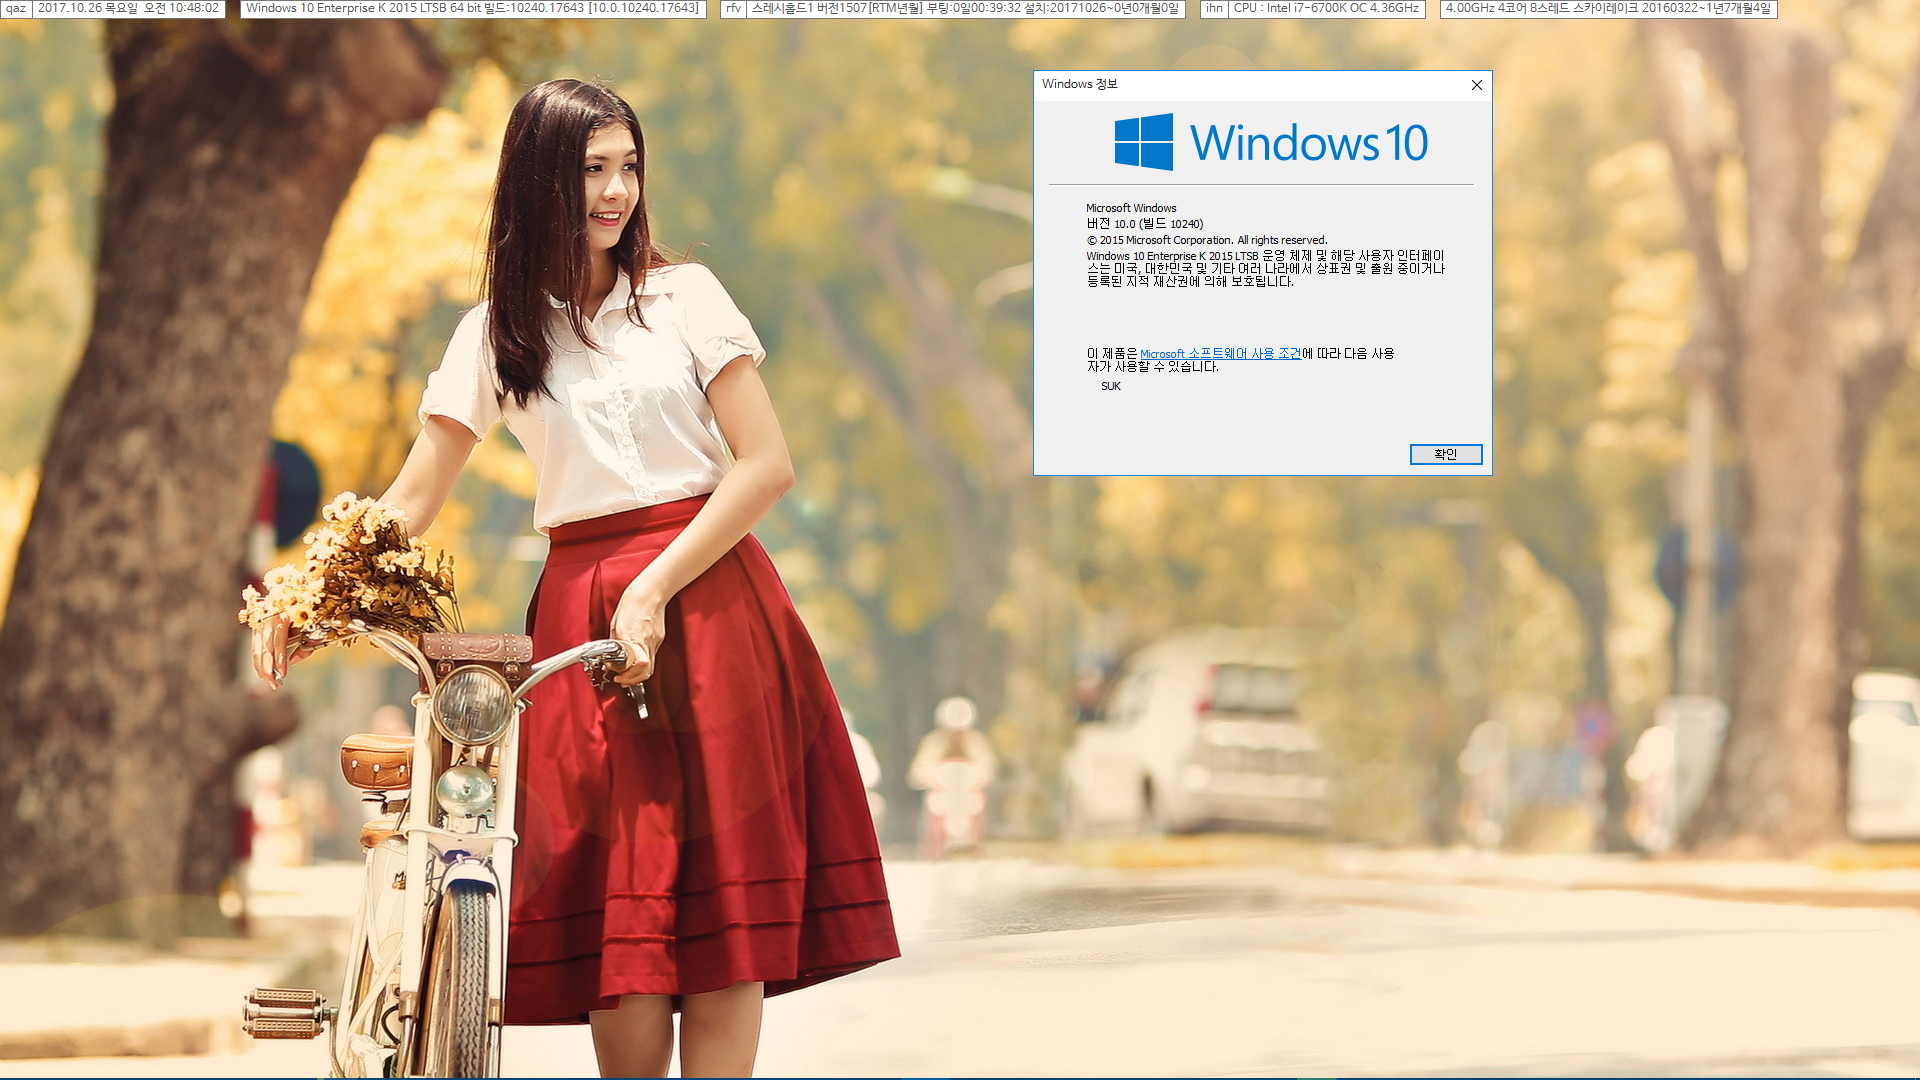 윈도10 실사용 설치 기록- Windows 10 Enterprise 2015 LTSB - 실컴에 설치 완료 2017-10-26_104802.png